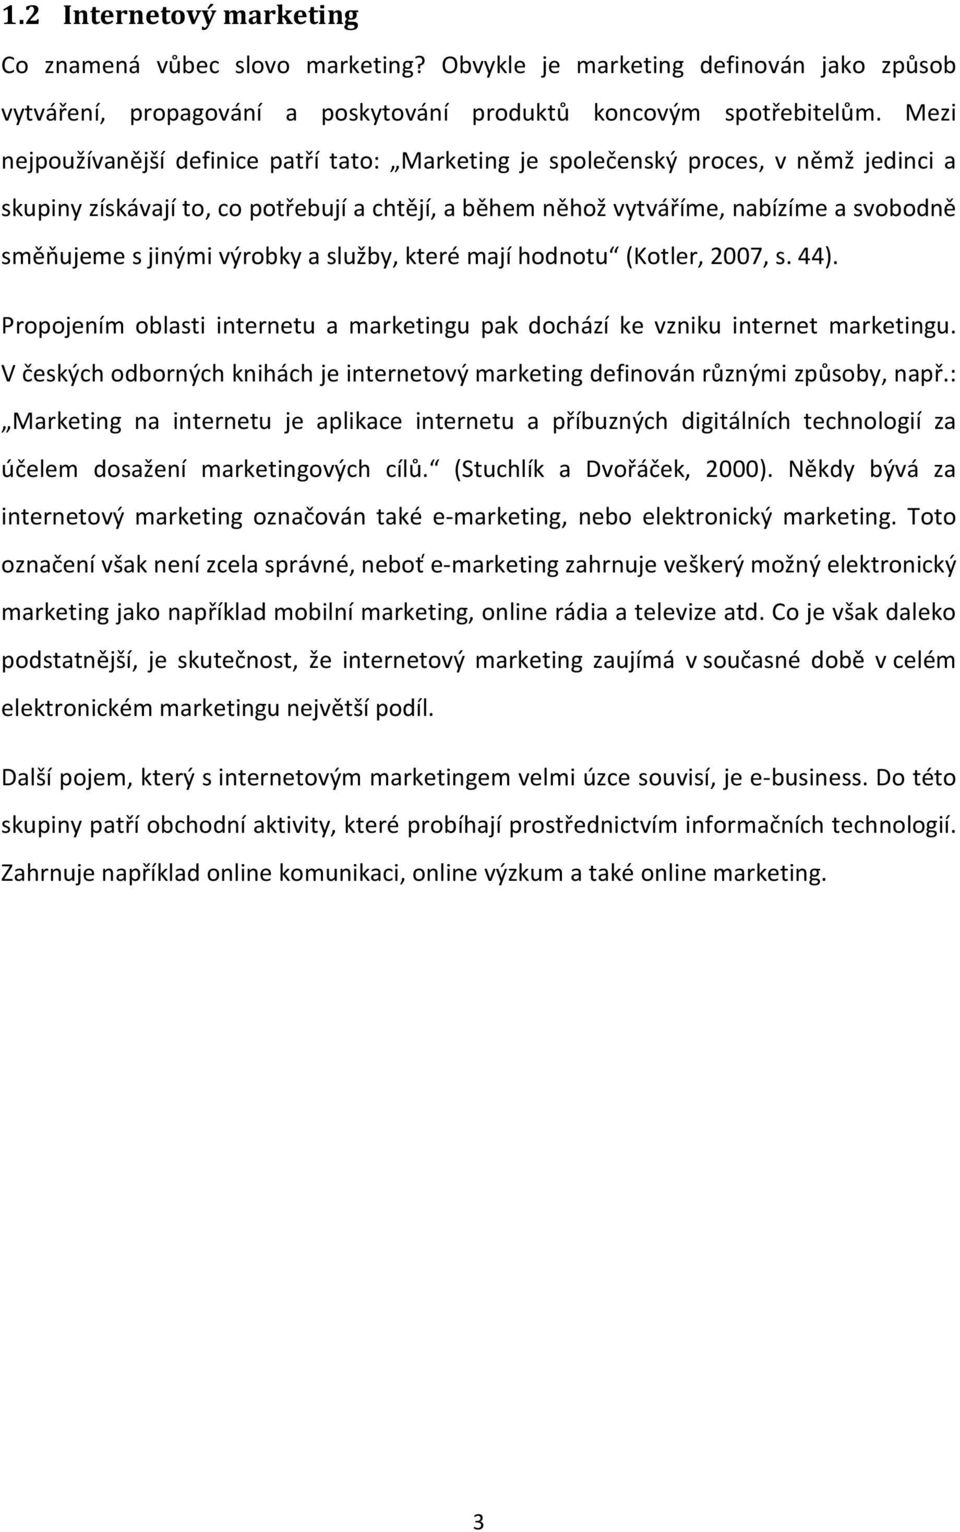 jinými výrobky a služby, které mají hodnotu (Kotler, 2007, s. 44). Propojením oblasti internetu a marketingu pak dochází ke vzniku internet marketingu.